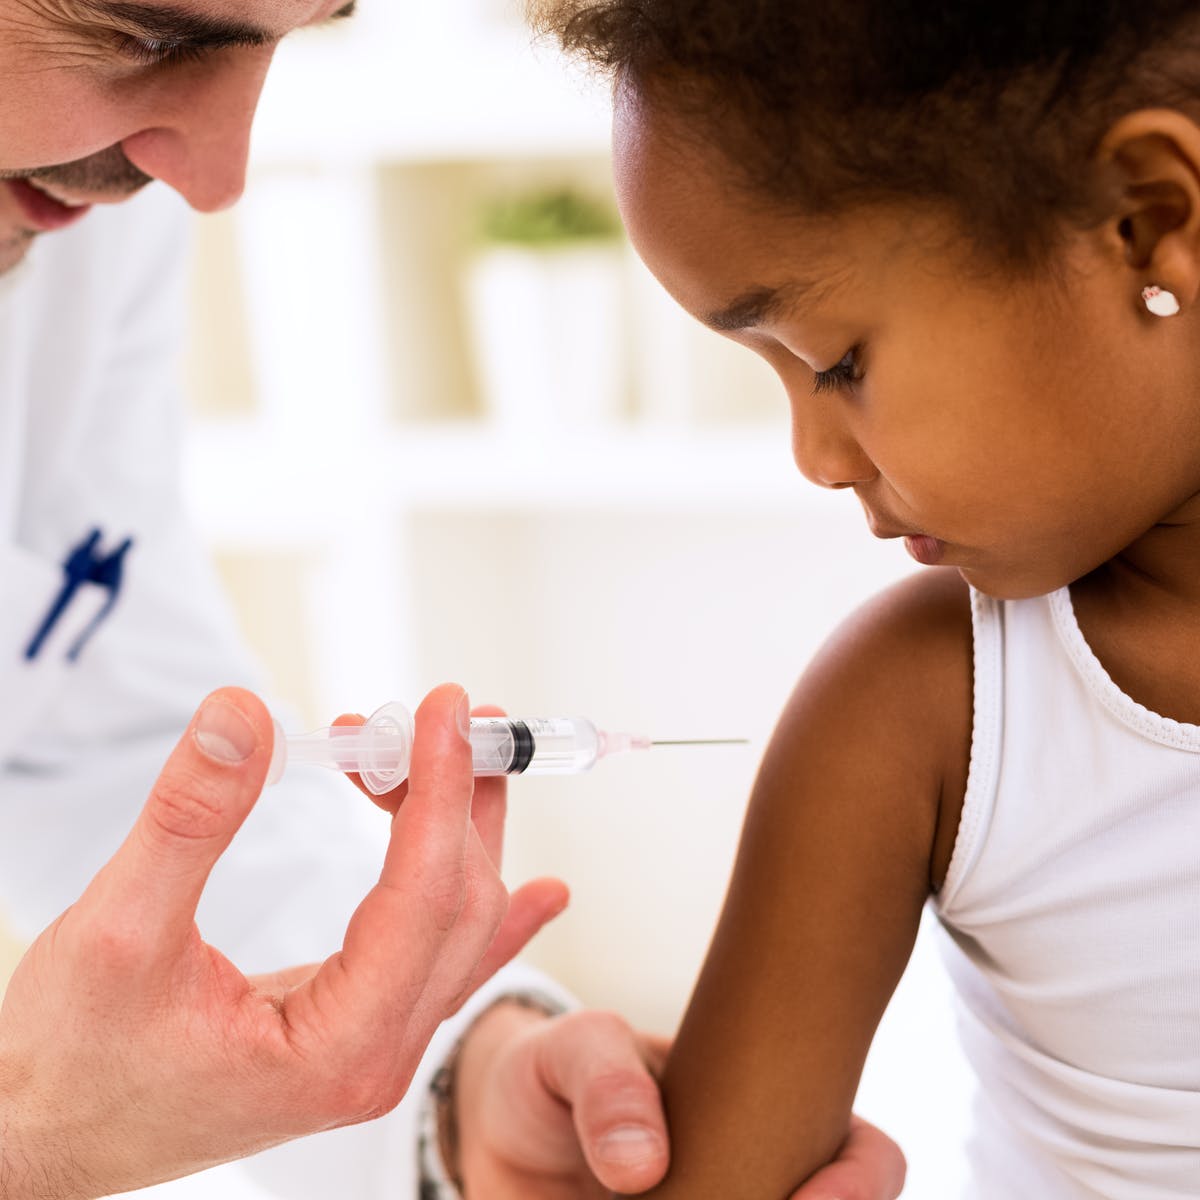 کاهش واکسیناسیون کودکان در زمان کرونا و نتایج آن